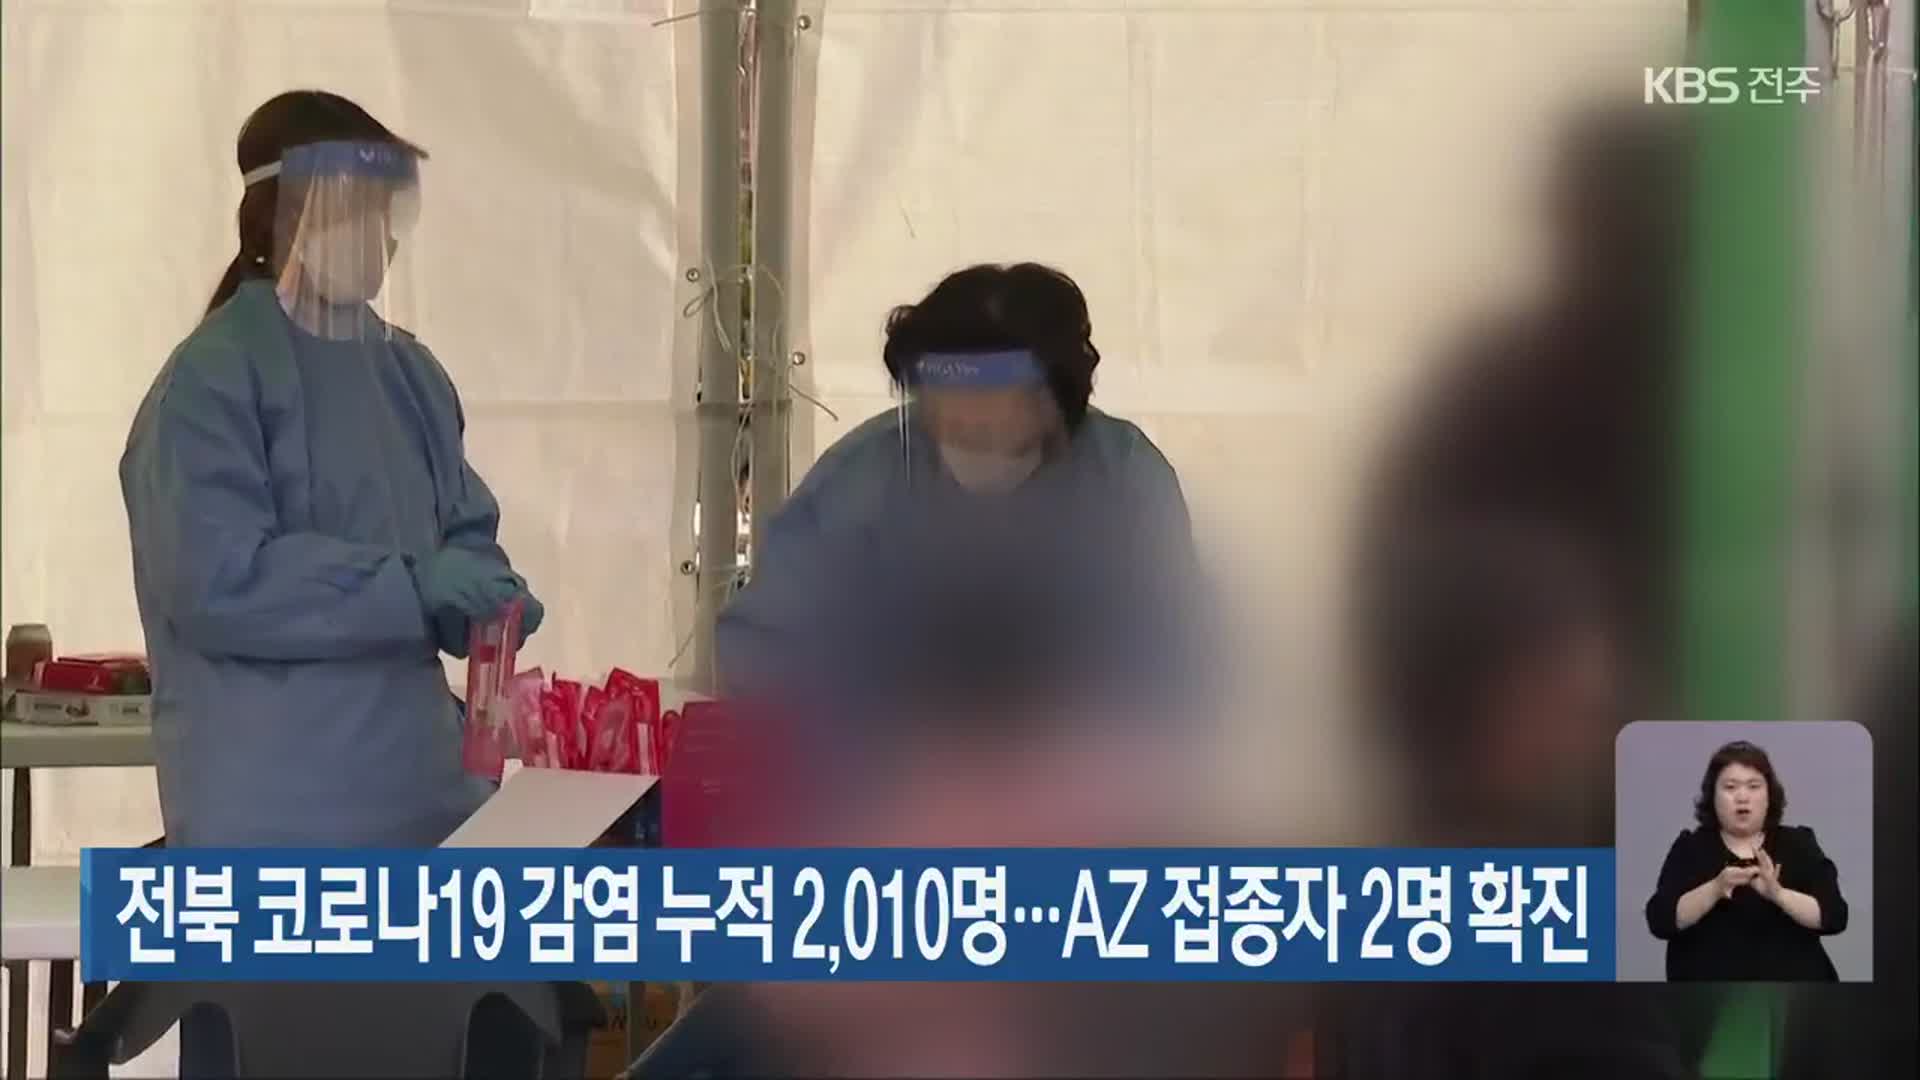 전북 코로나19 감염 누적 2,010명…AZ 접종자 2명 확진